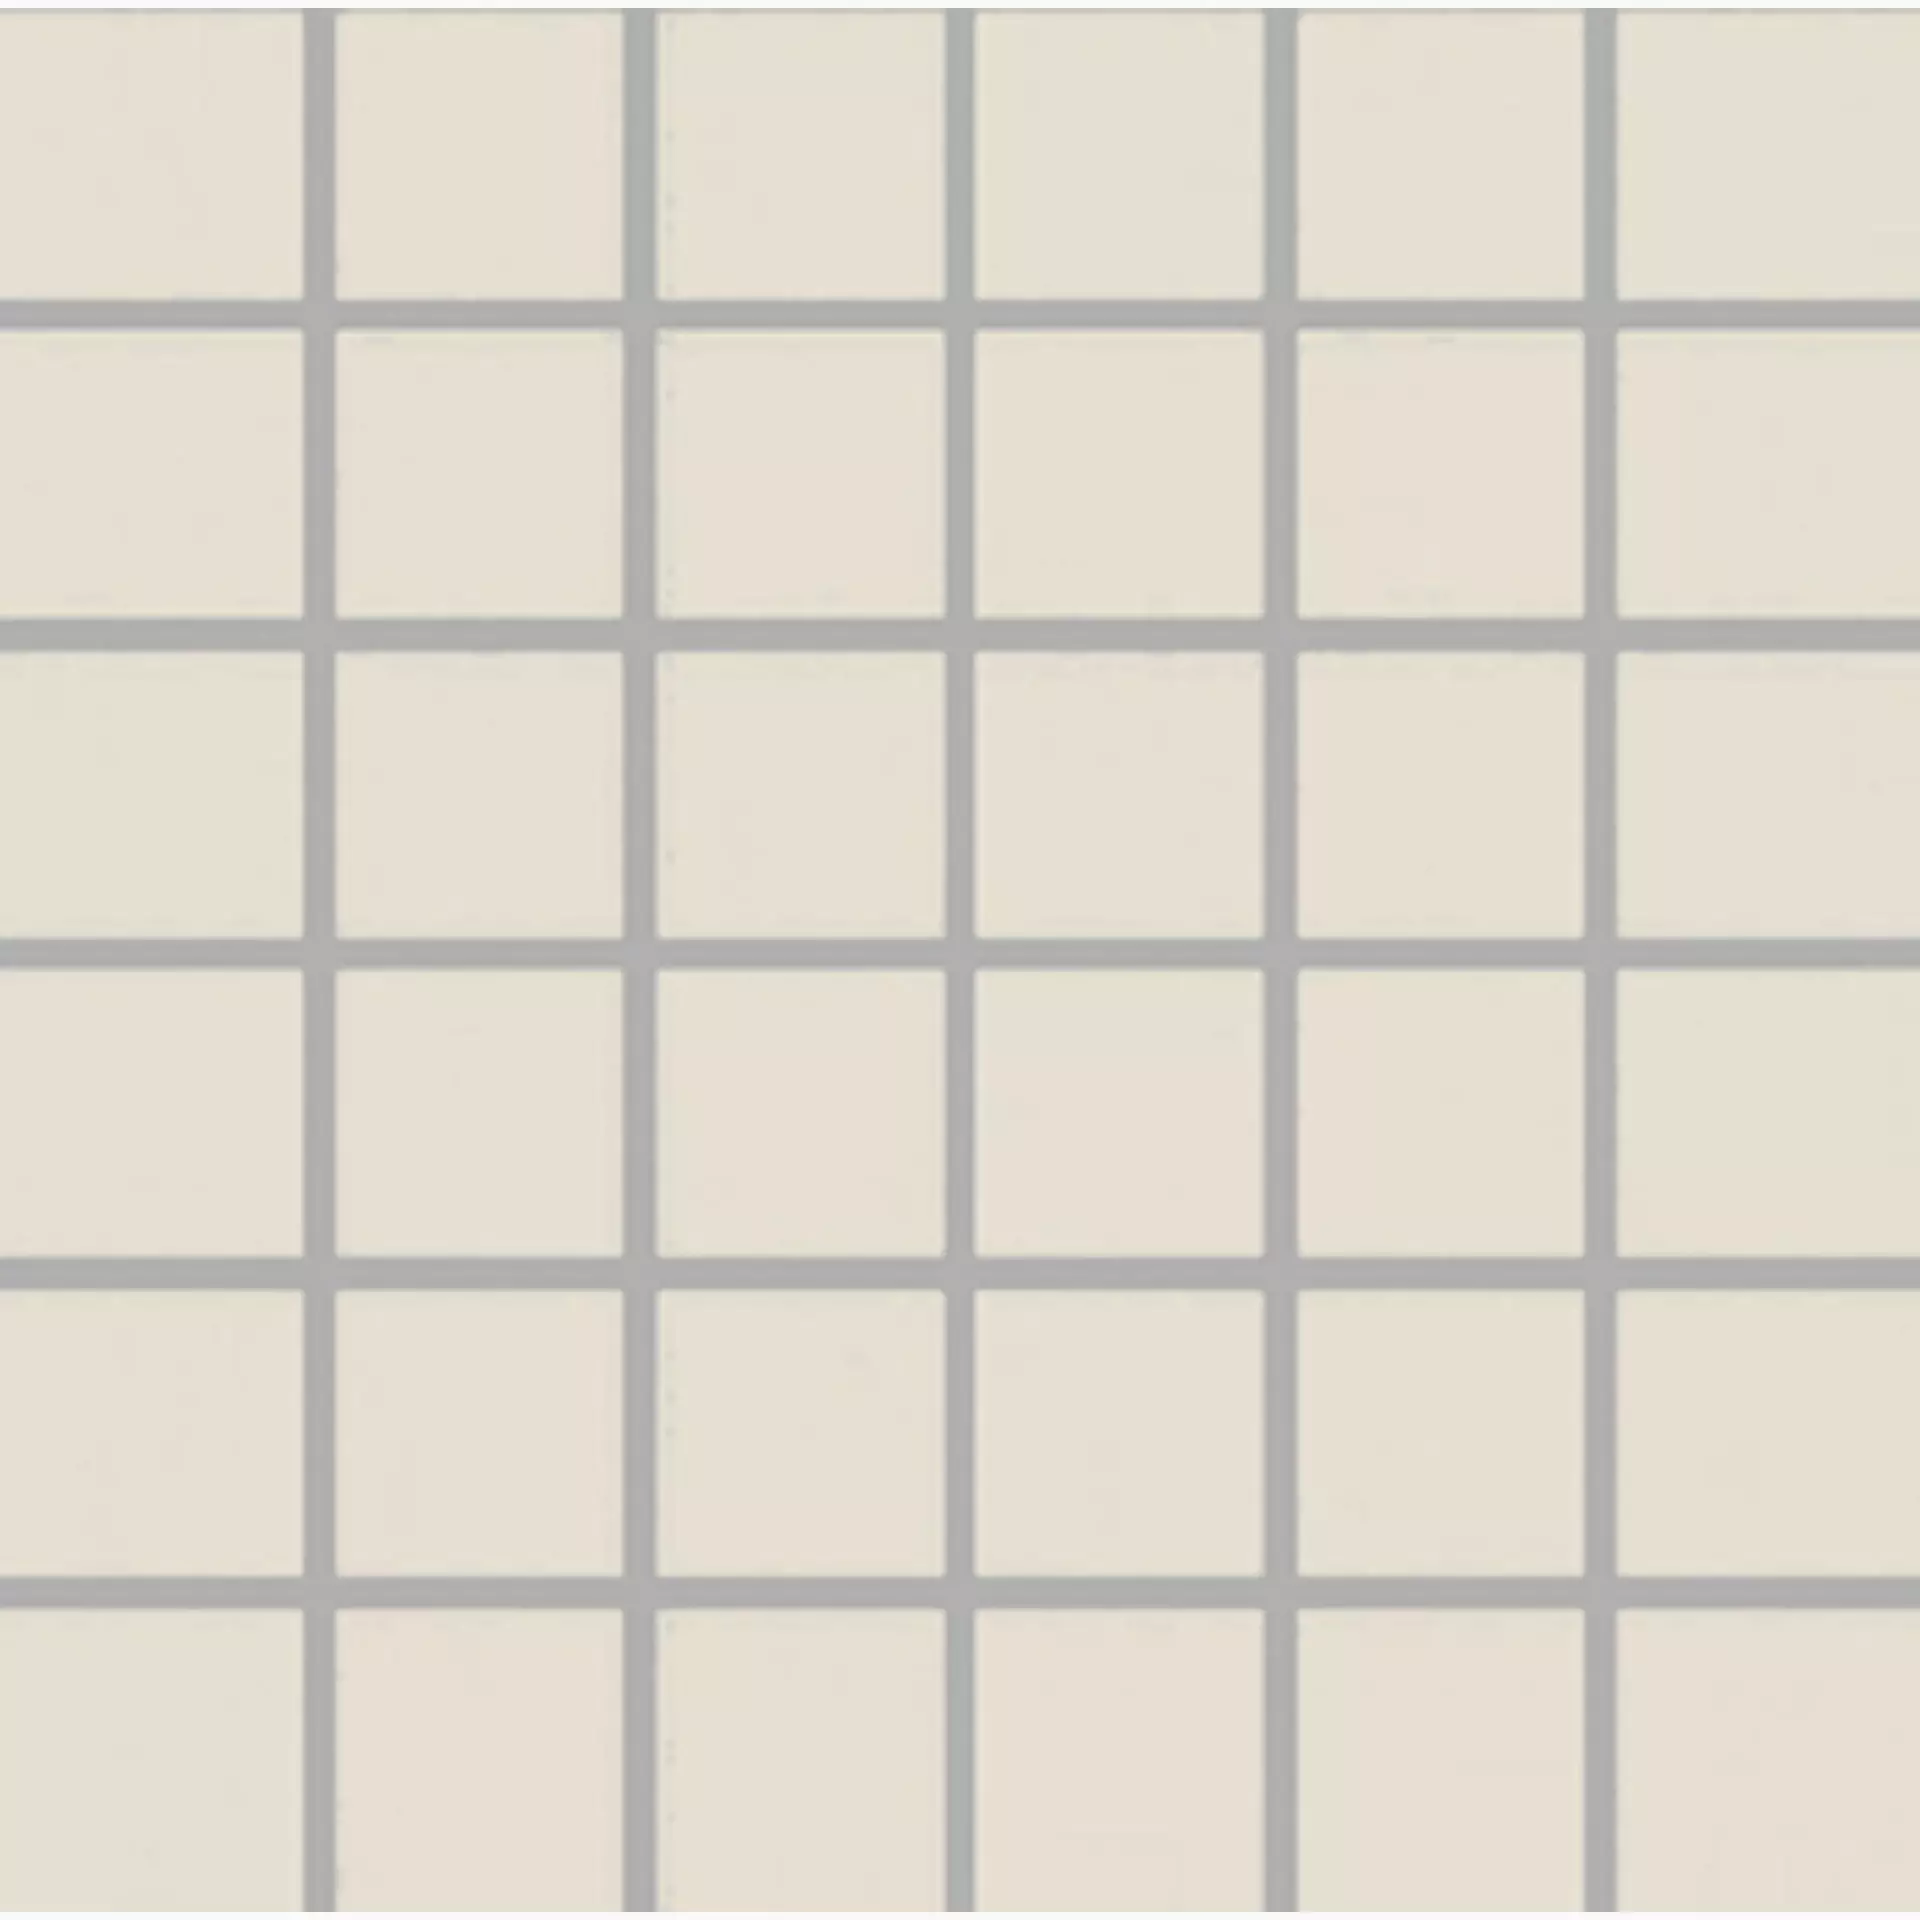 Wandfliese,Bodenfliese Villeroy & Boch Unit One White Matt White 2706-UT41 matt 5x5cm Mosaik (5x5) 6mm